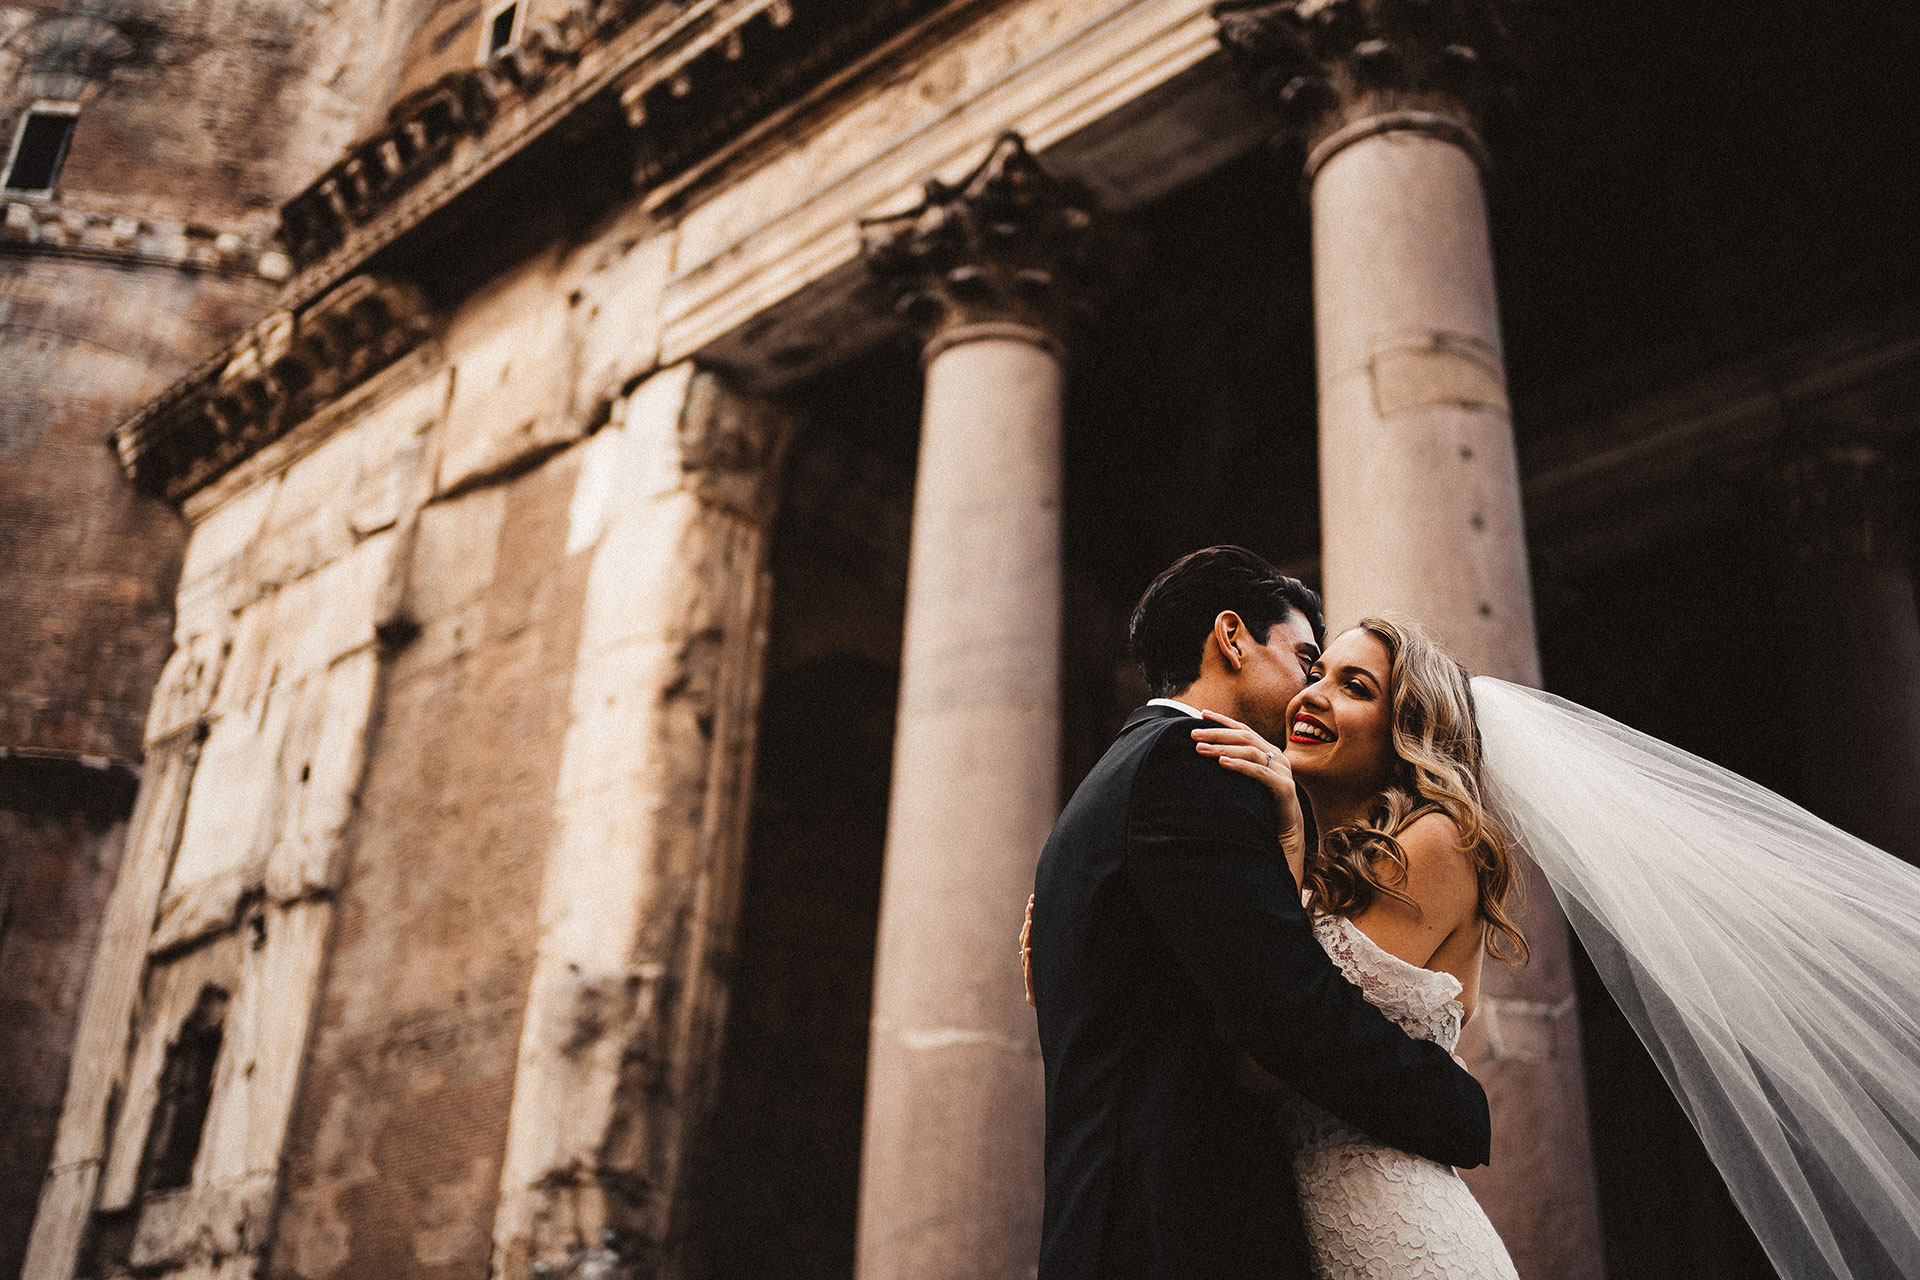 Fotografie di matrimonio a roma, racconti di vita